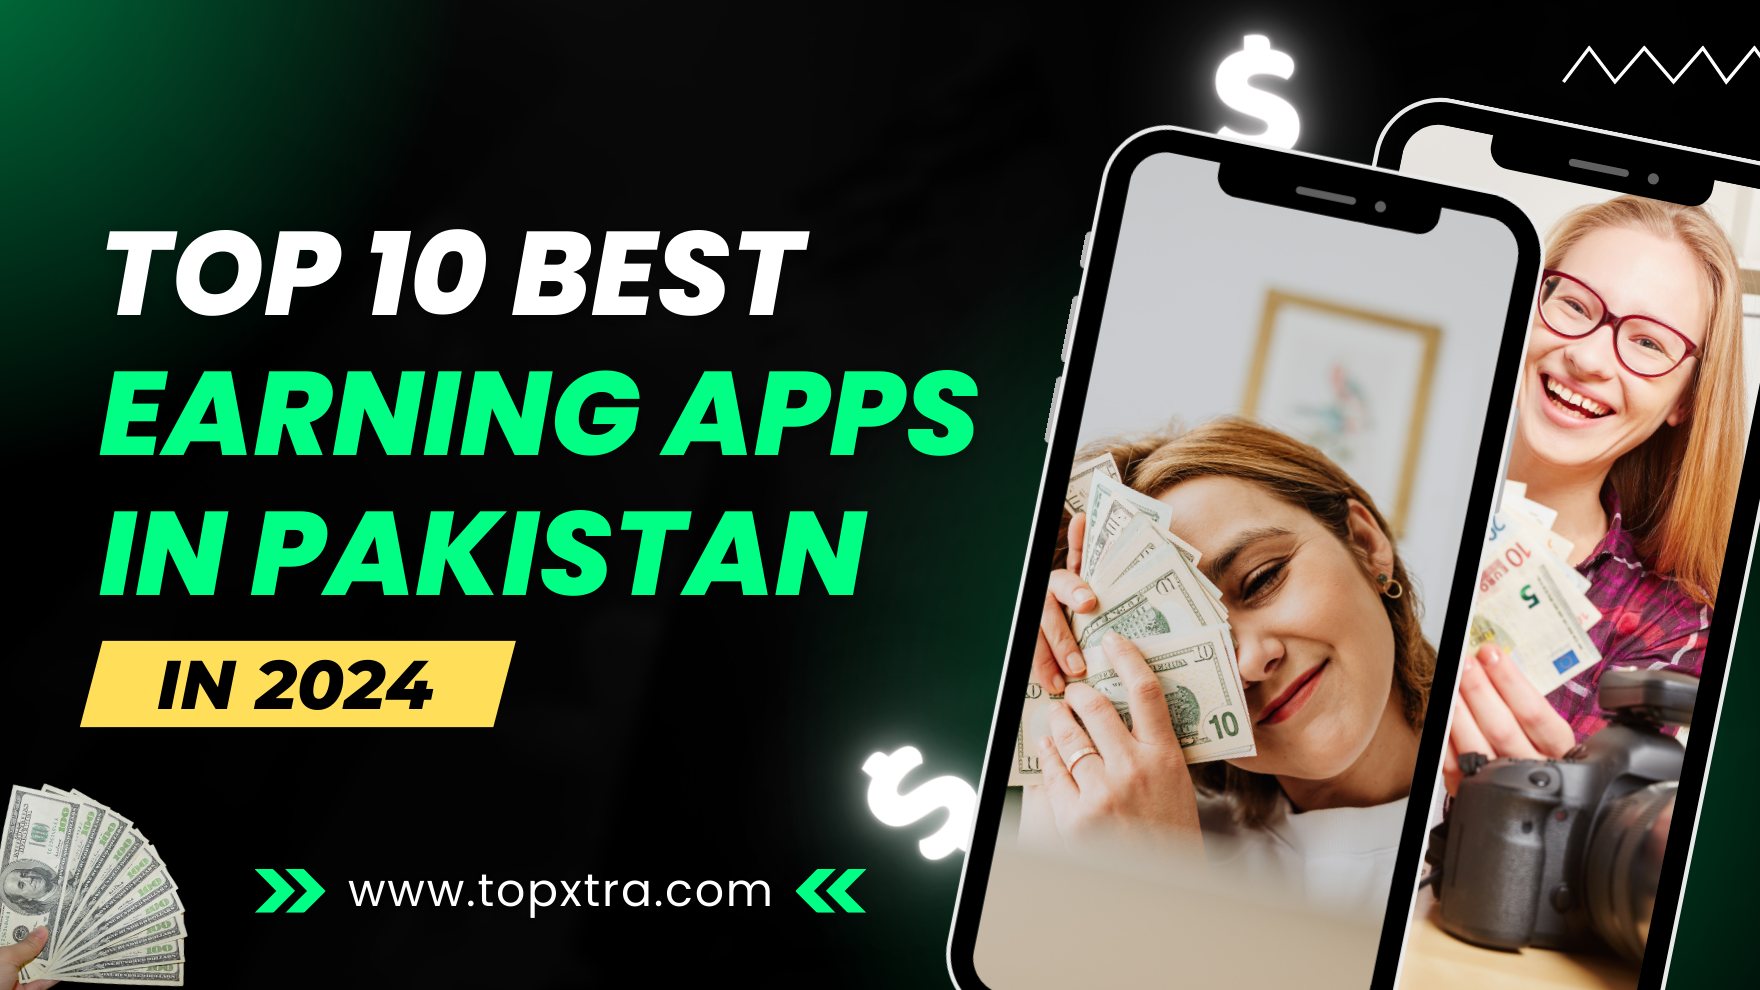 Top 10 Earning Apps in Pakistan in 2024 | Best Earning Apps